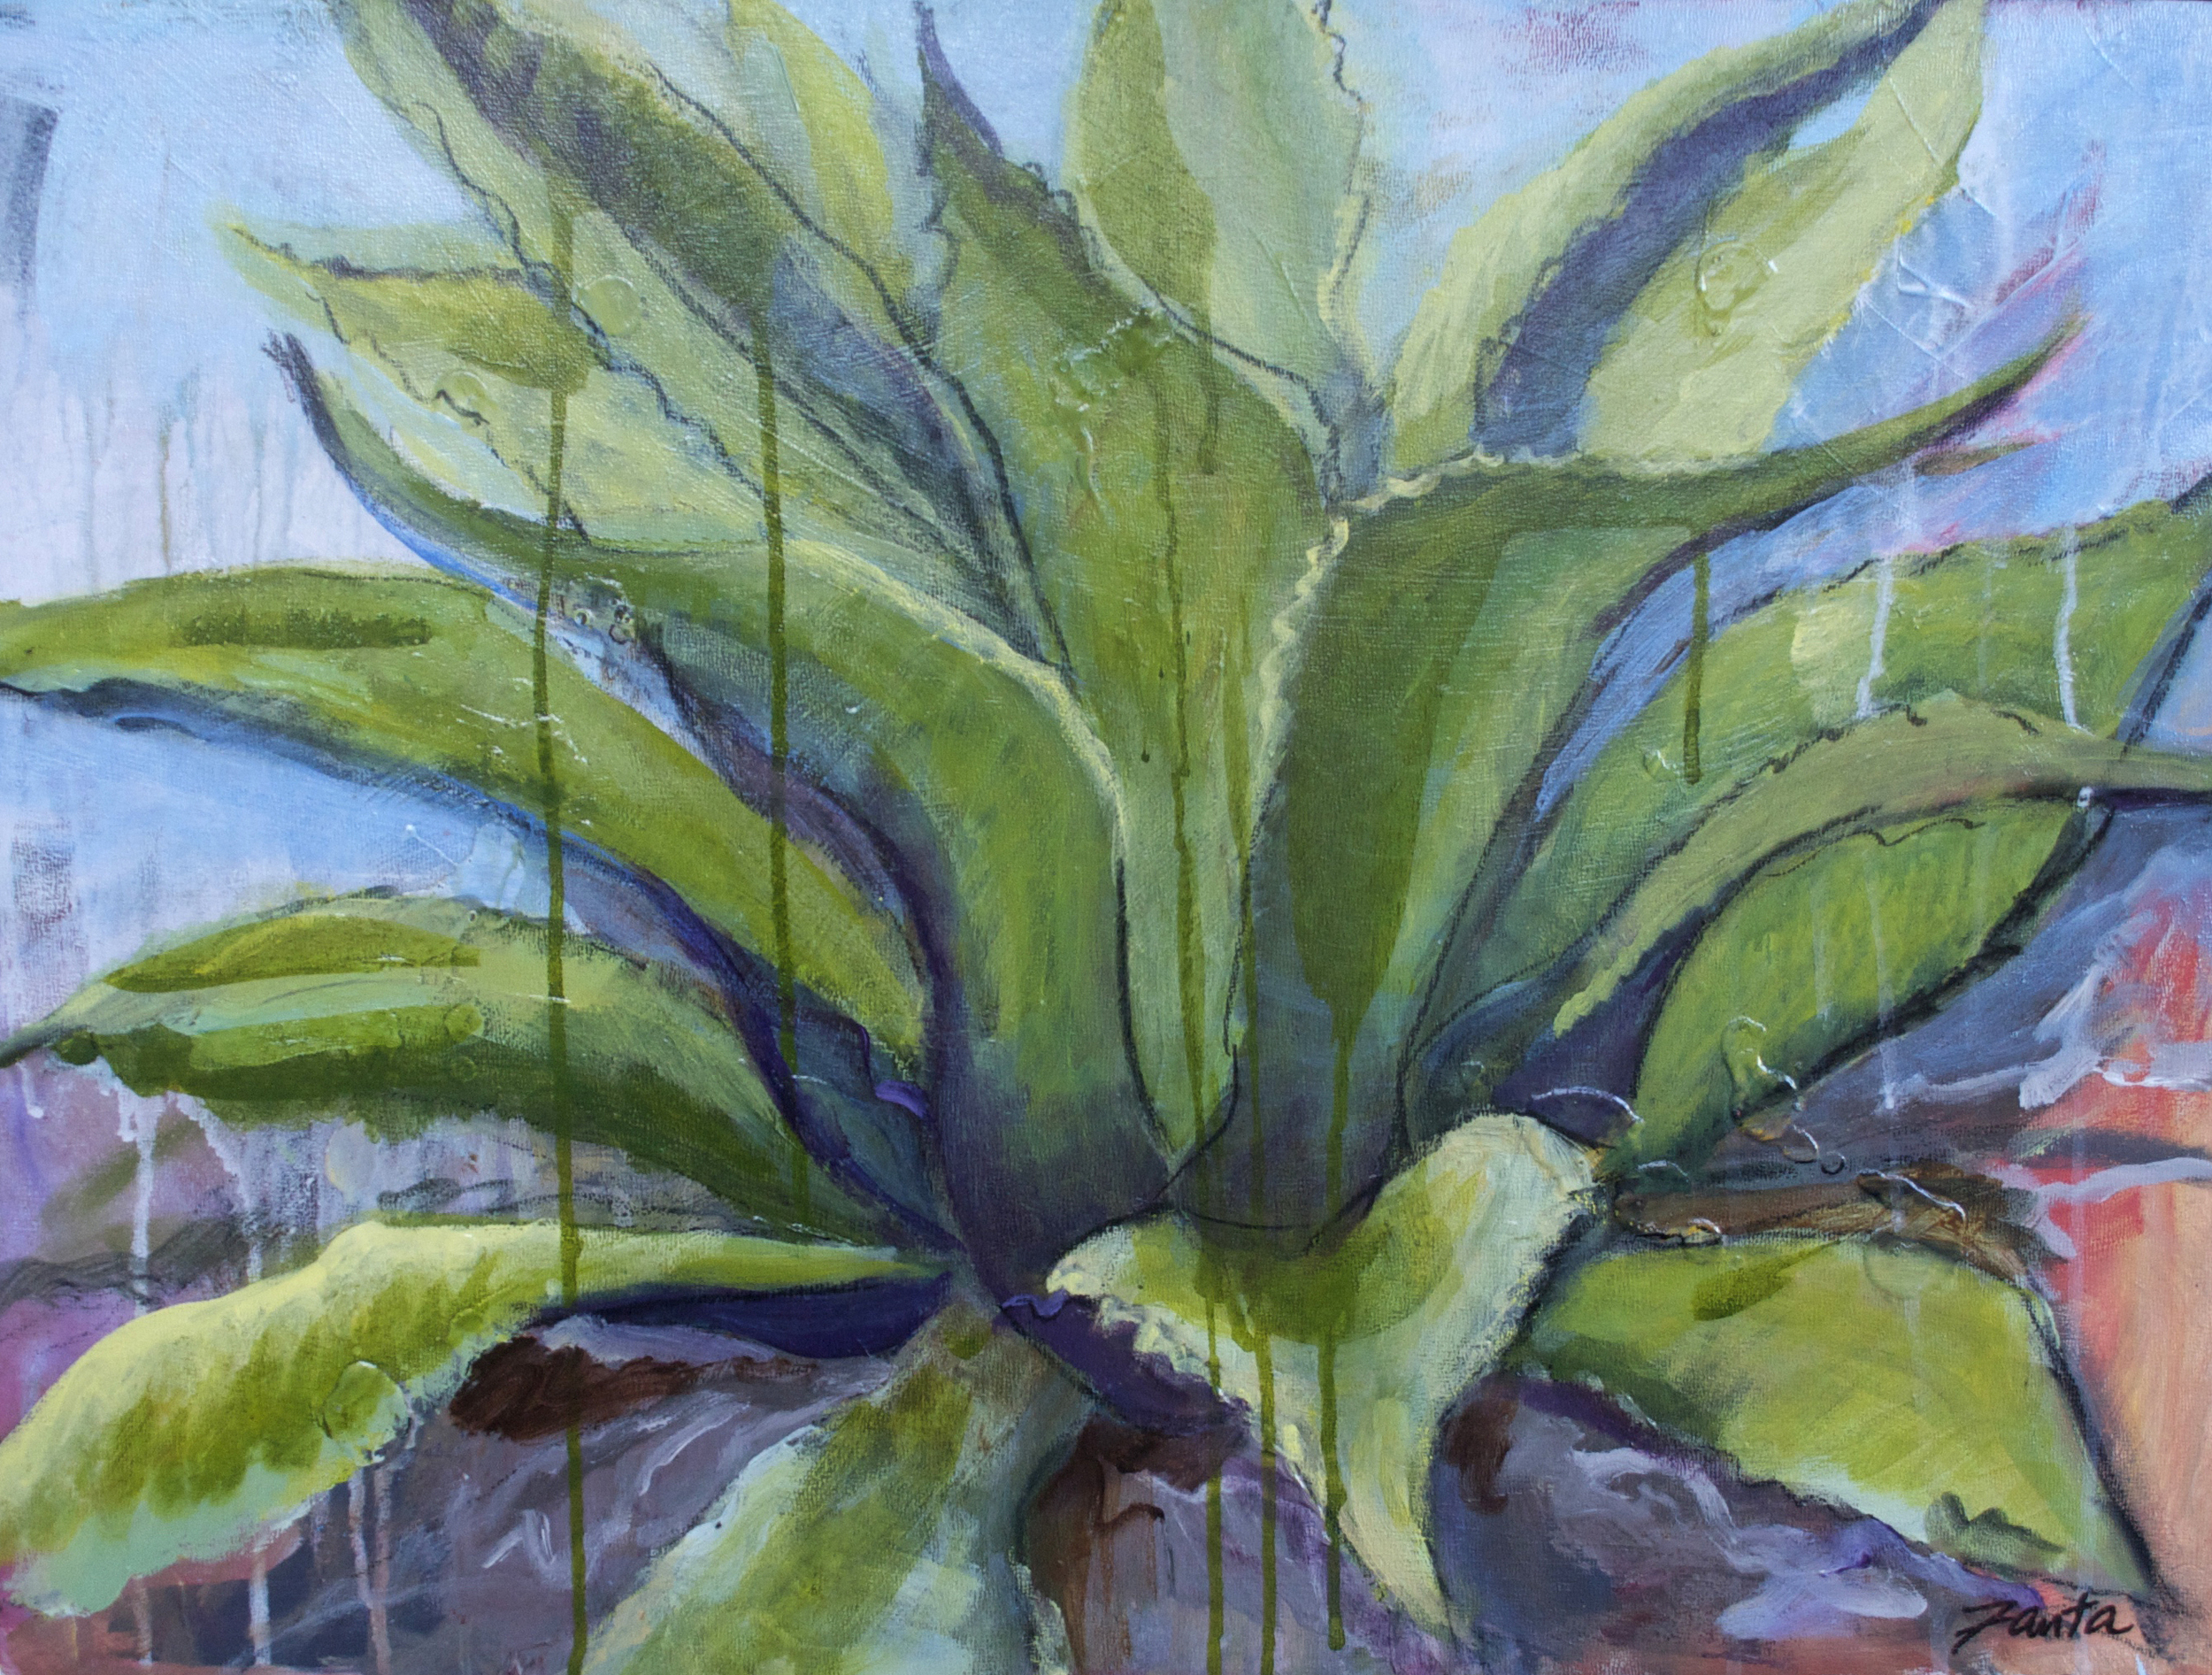 portrait of a plant